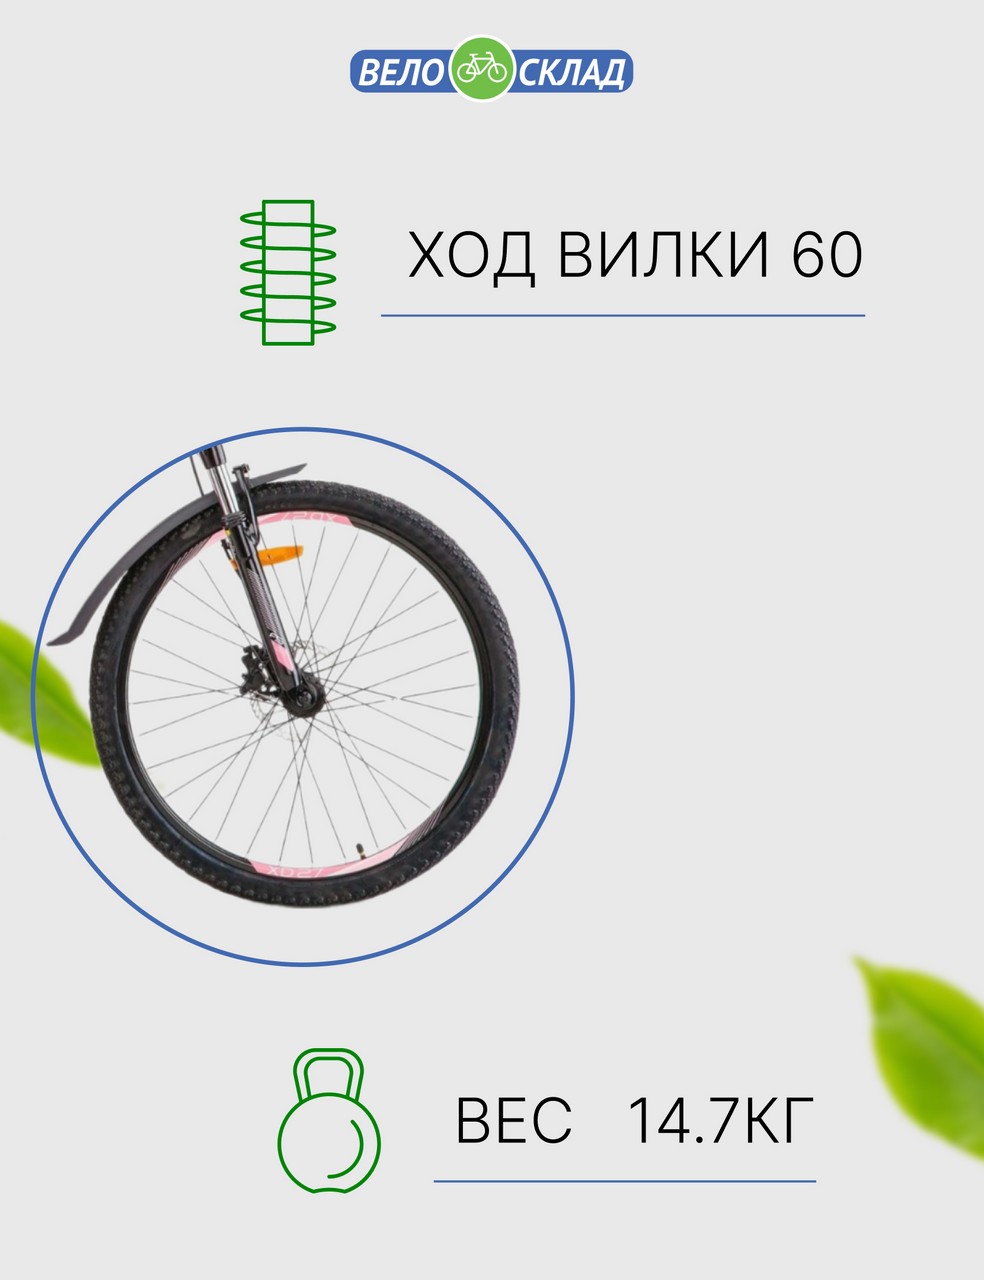 Женский велосипед Stels Miss 6100 D 26 V010, год 2023, цвет Серебристый, ростовка 19